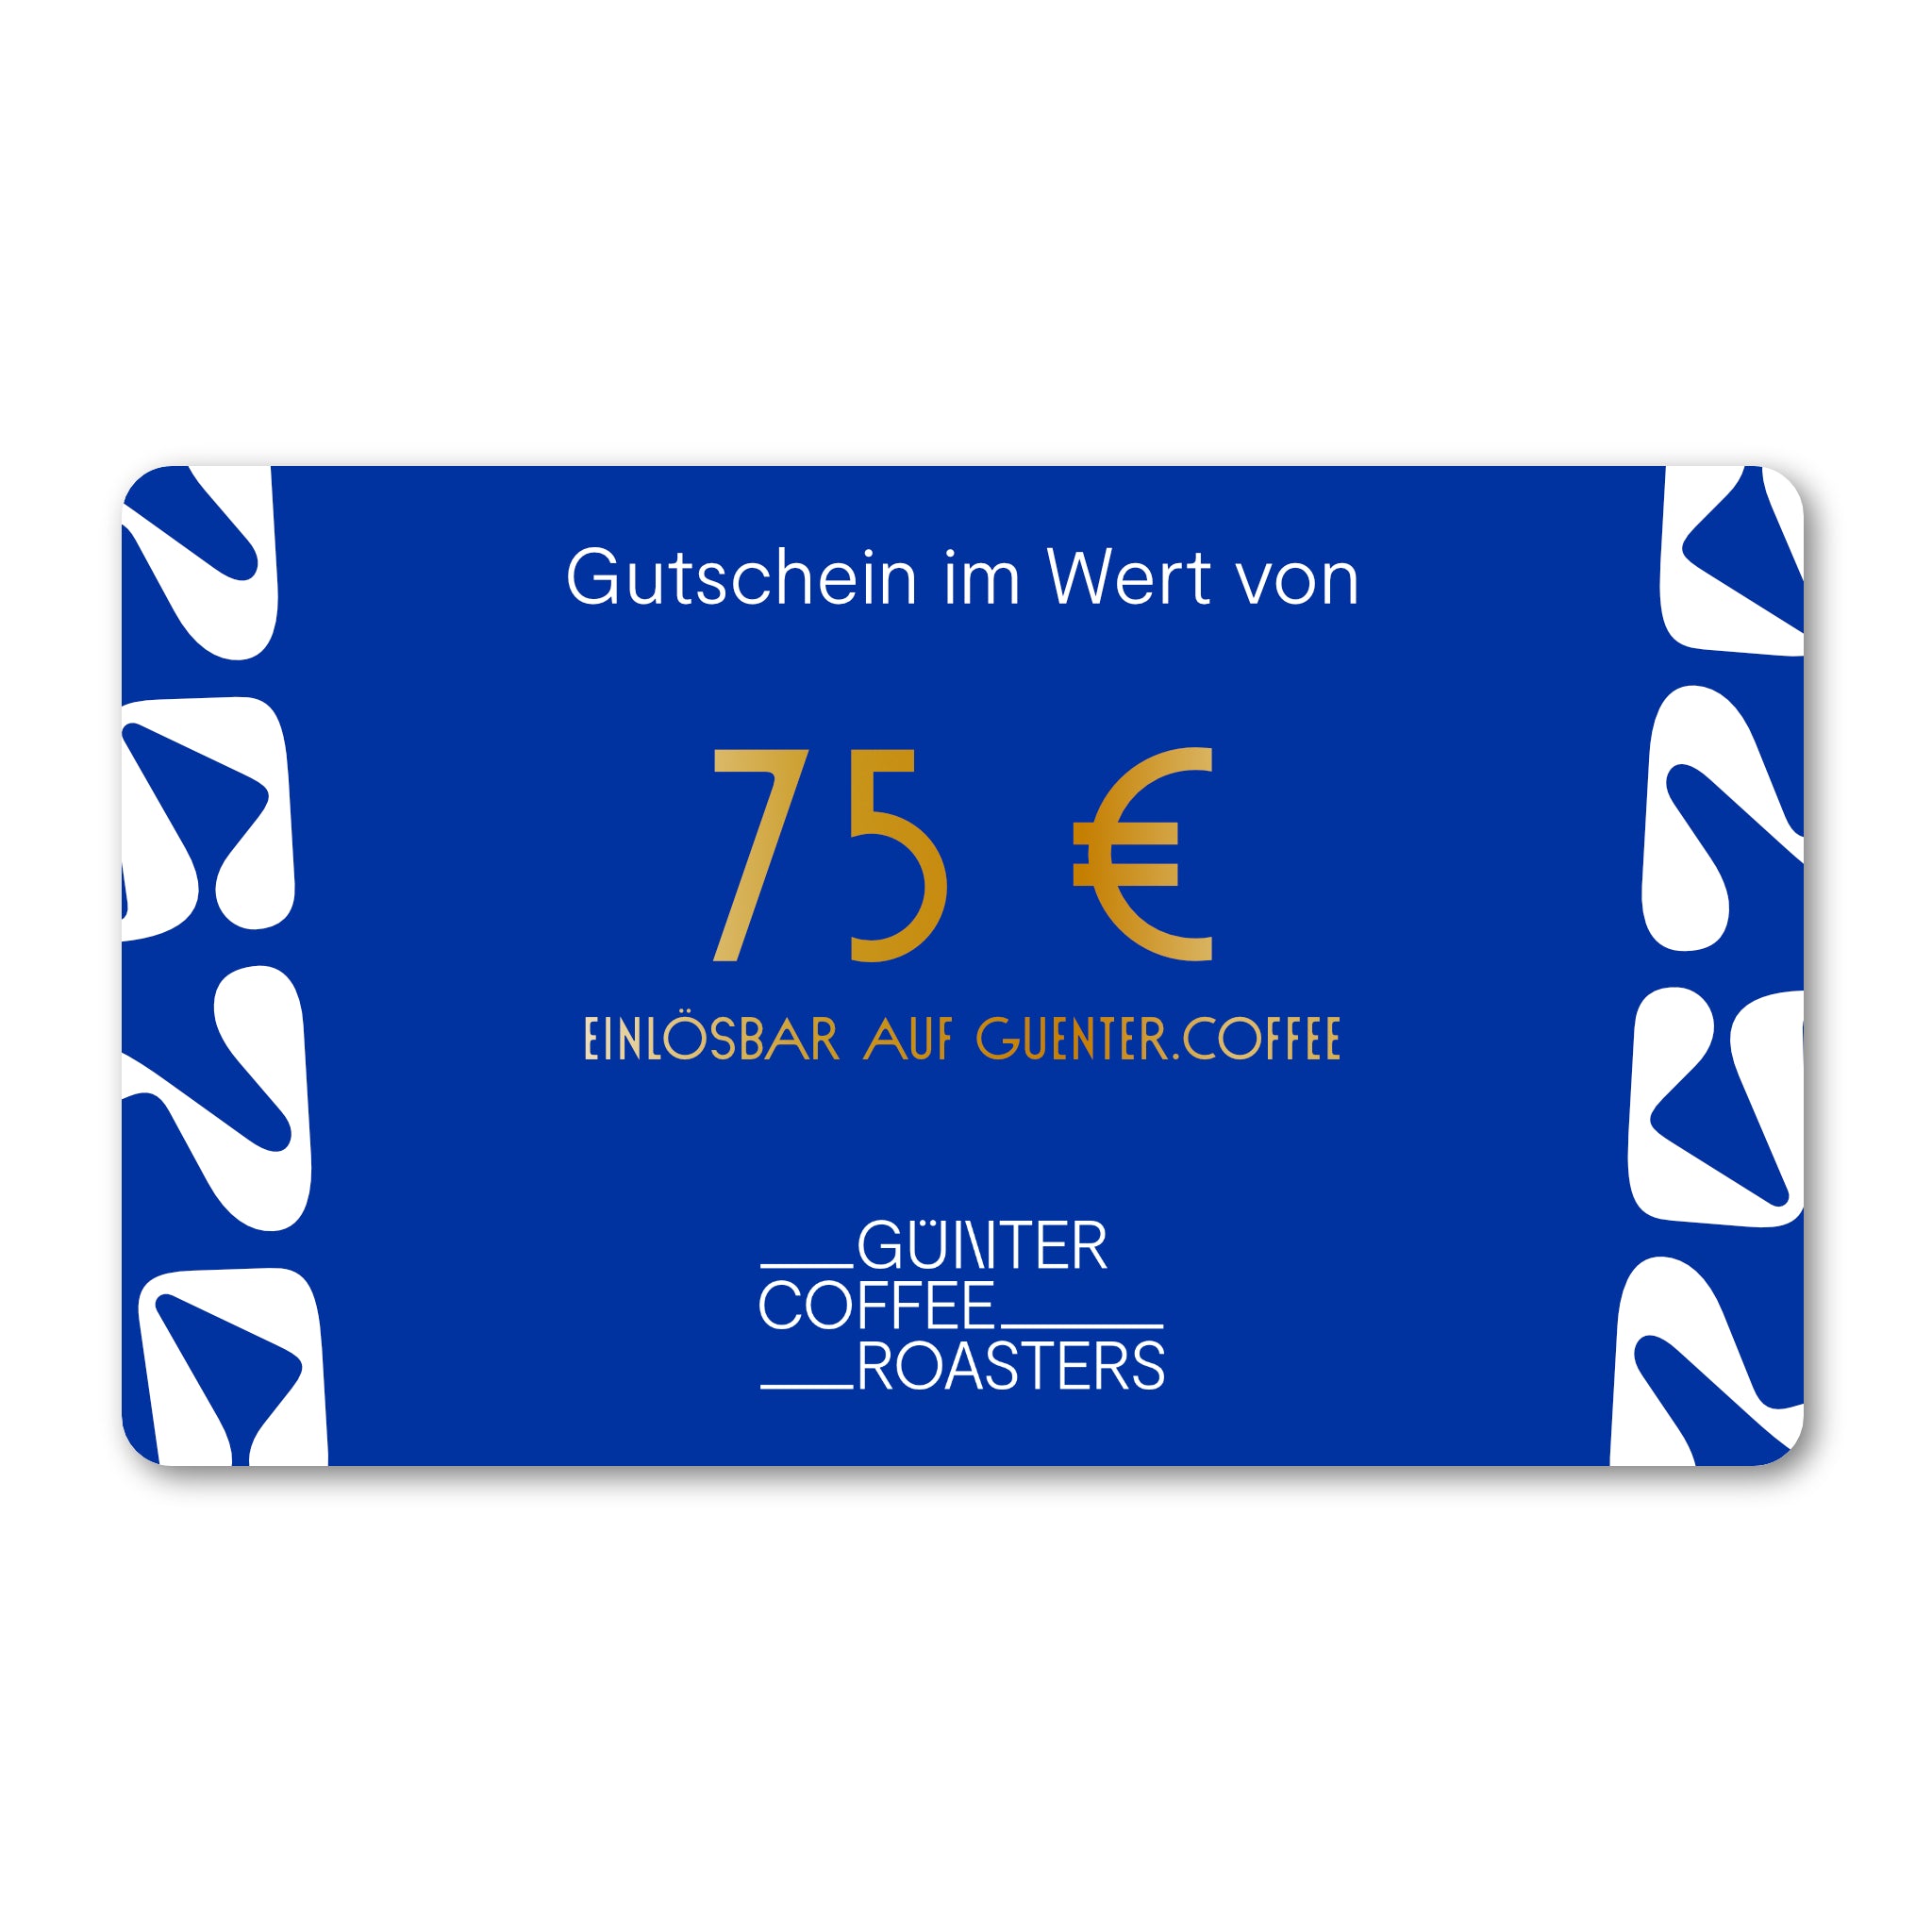 Produktbild digitaler Geschenkgutschein im Wert von 75 €.